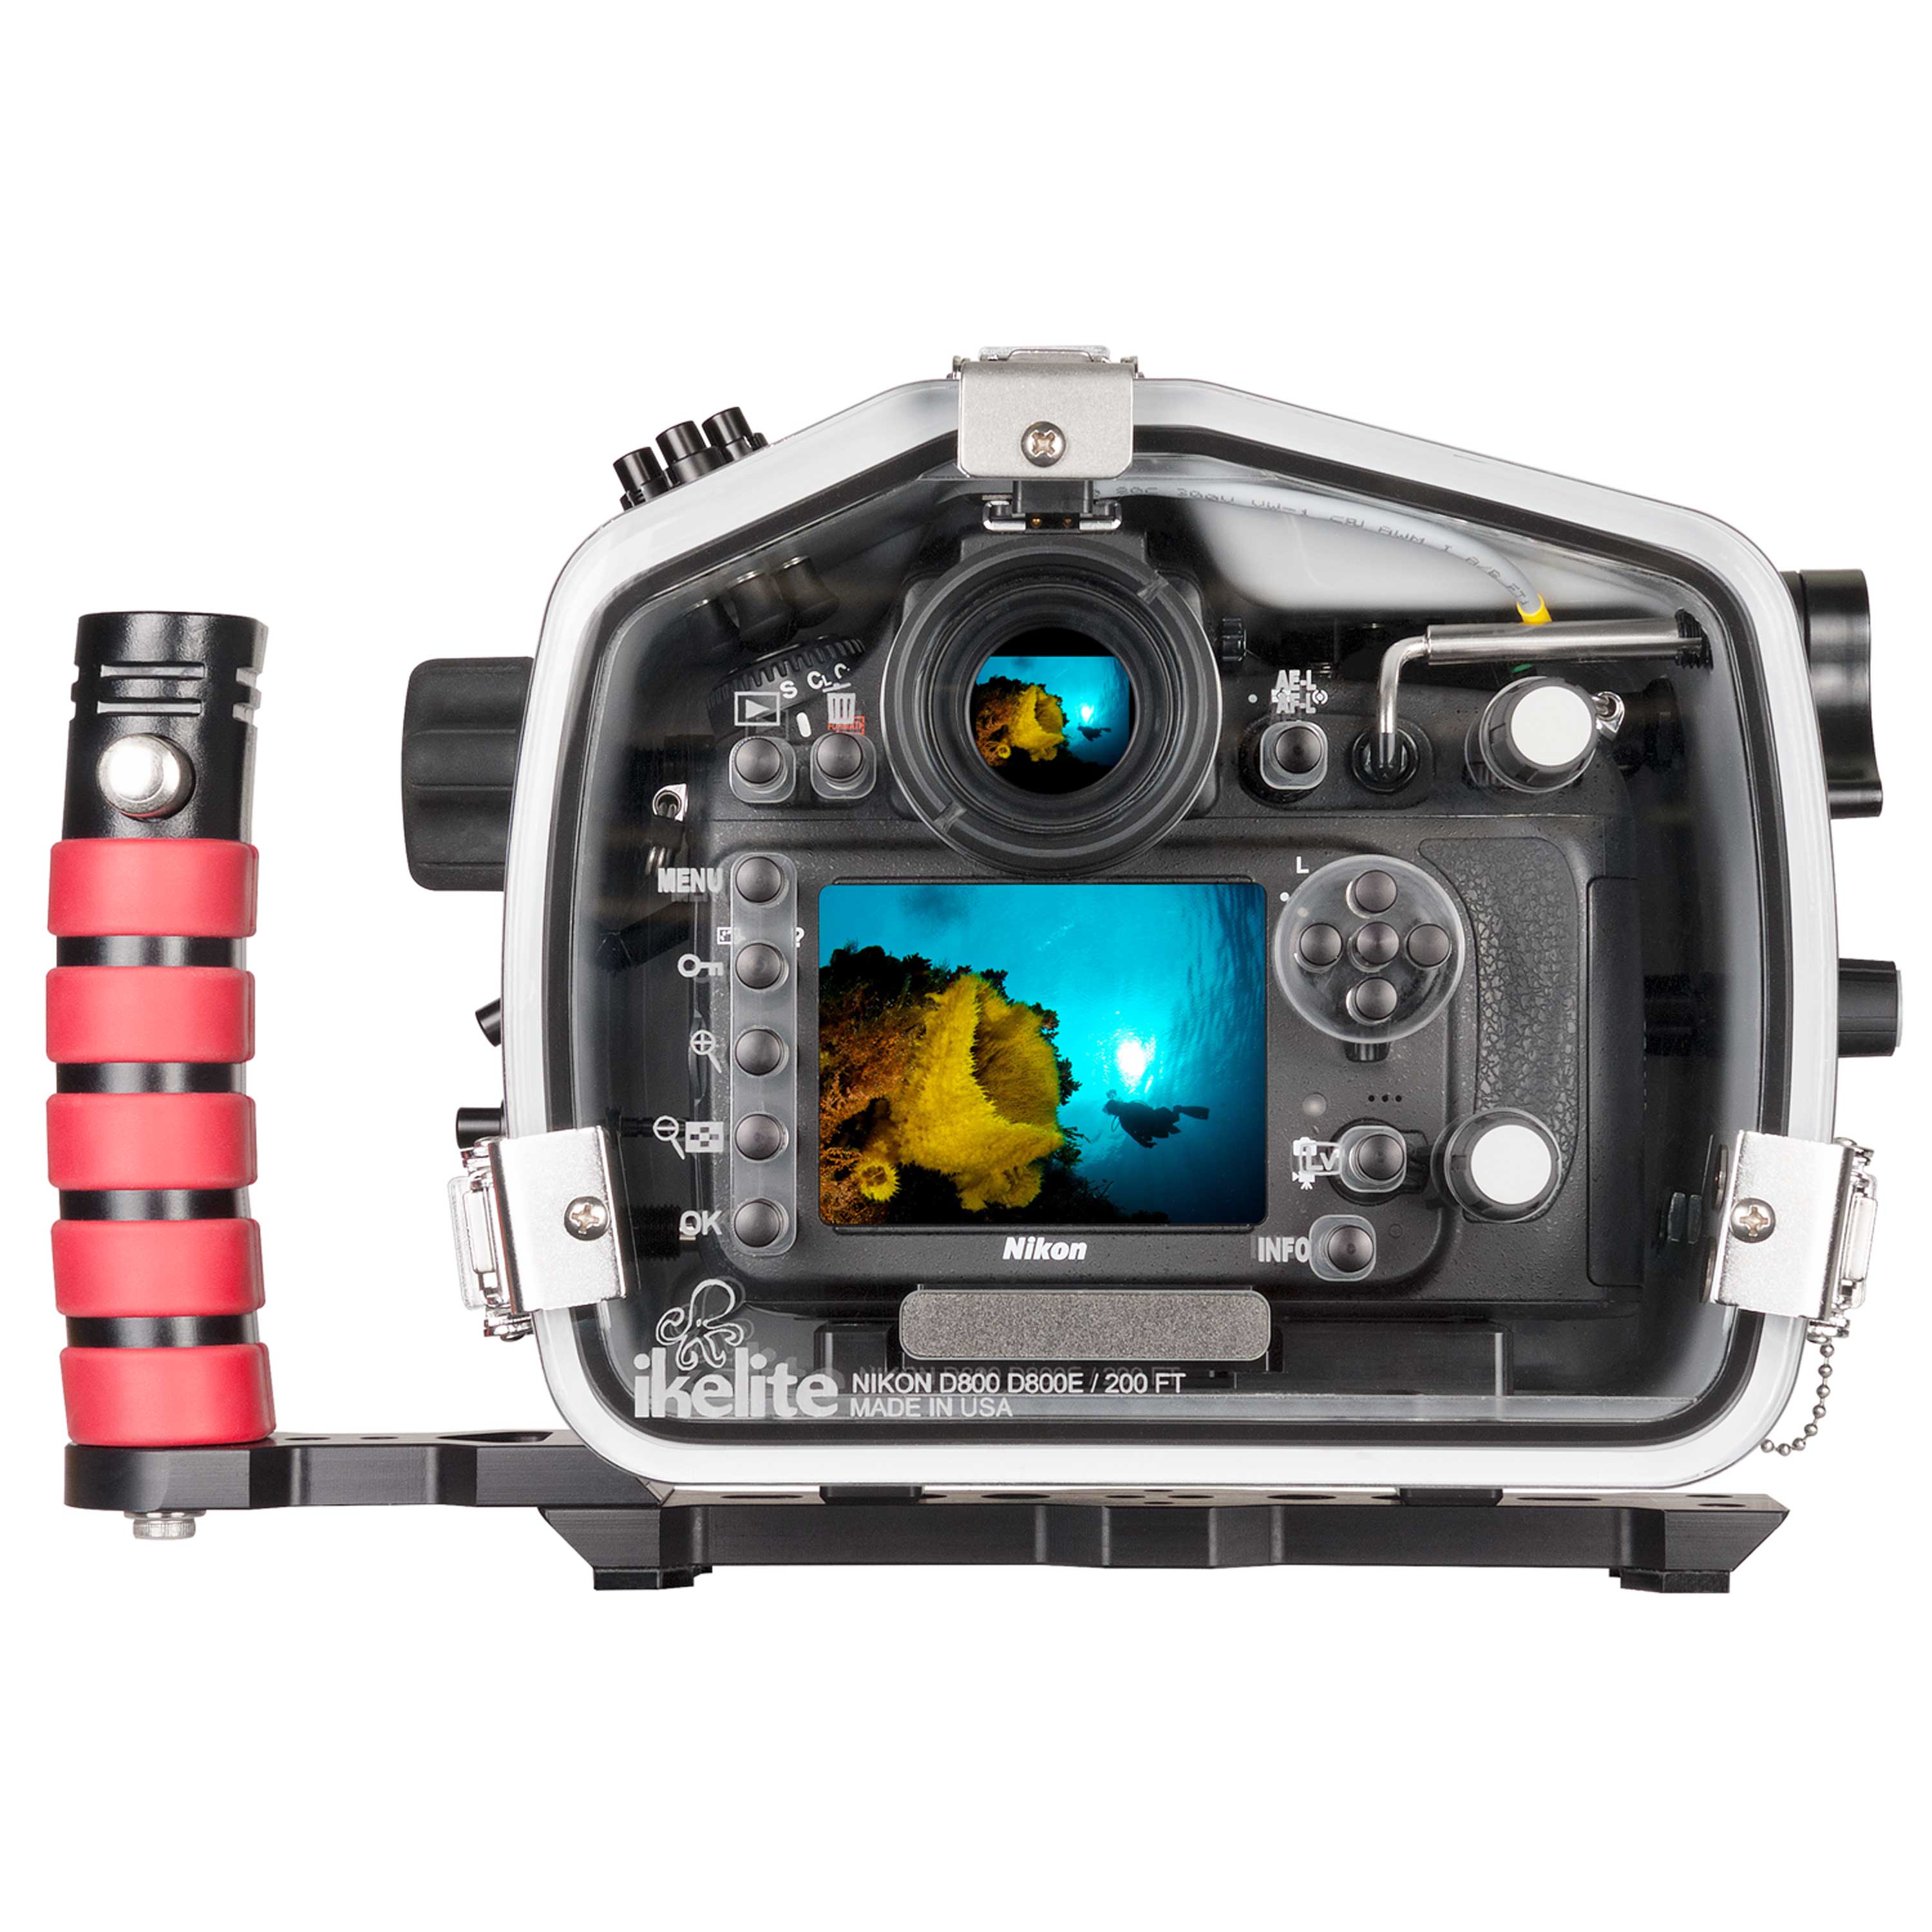 200DL Underwater Housing for Nikon D800, D800E DSLR Cameras